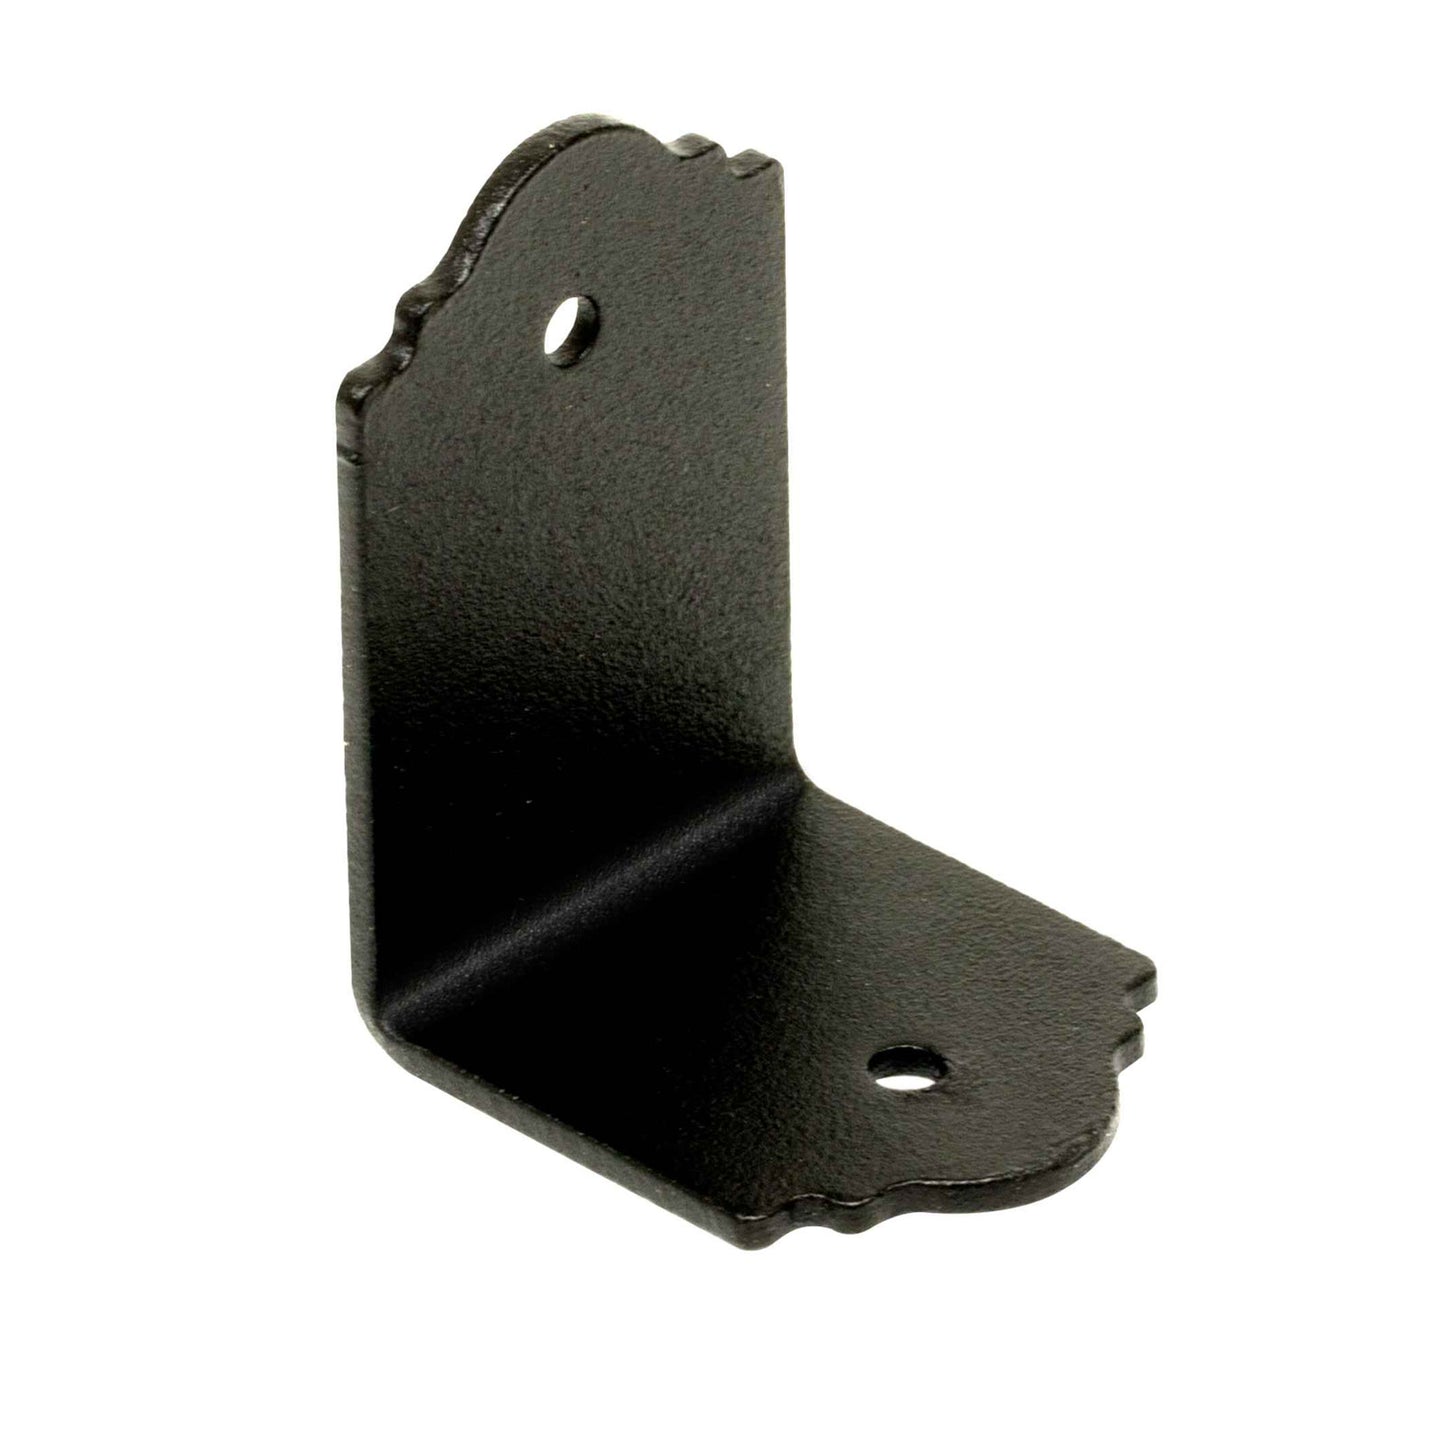 Corner angle strap in a powder black finish